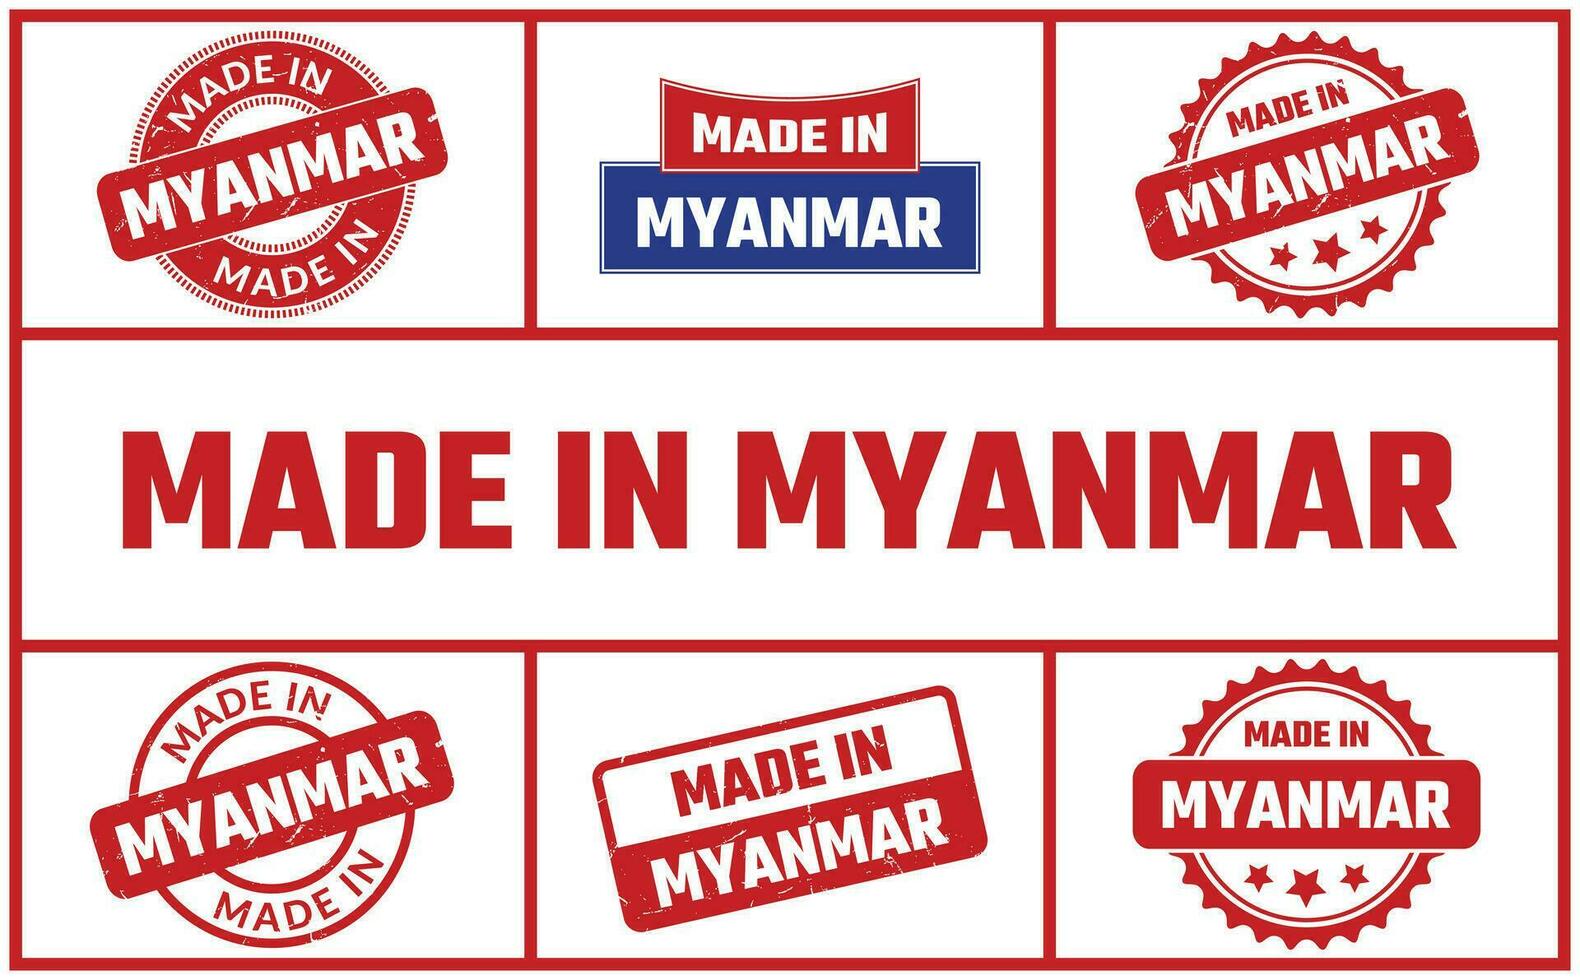 gemacht im Myanmar Gummi Briefmarke einstellen vektor